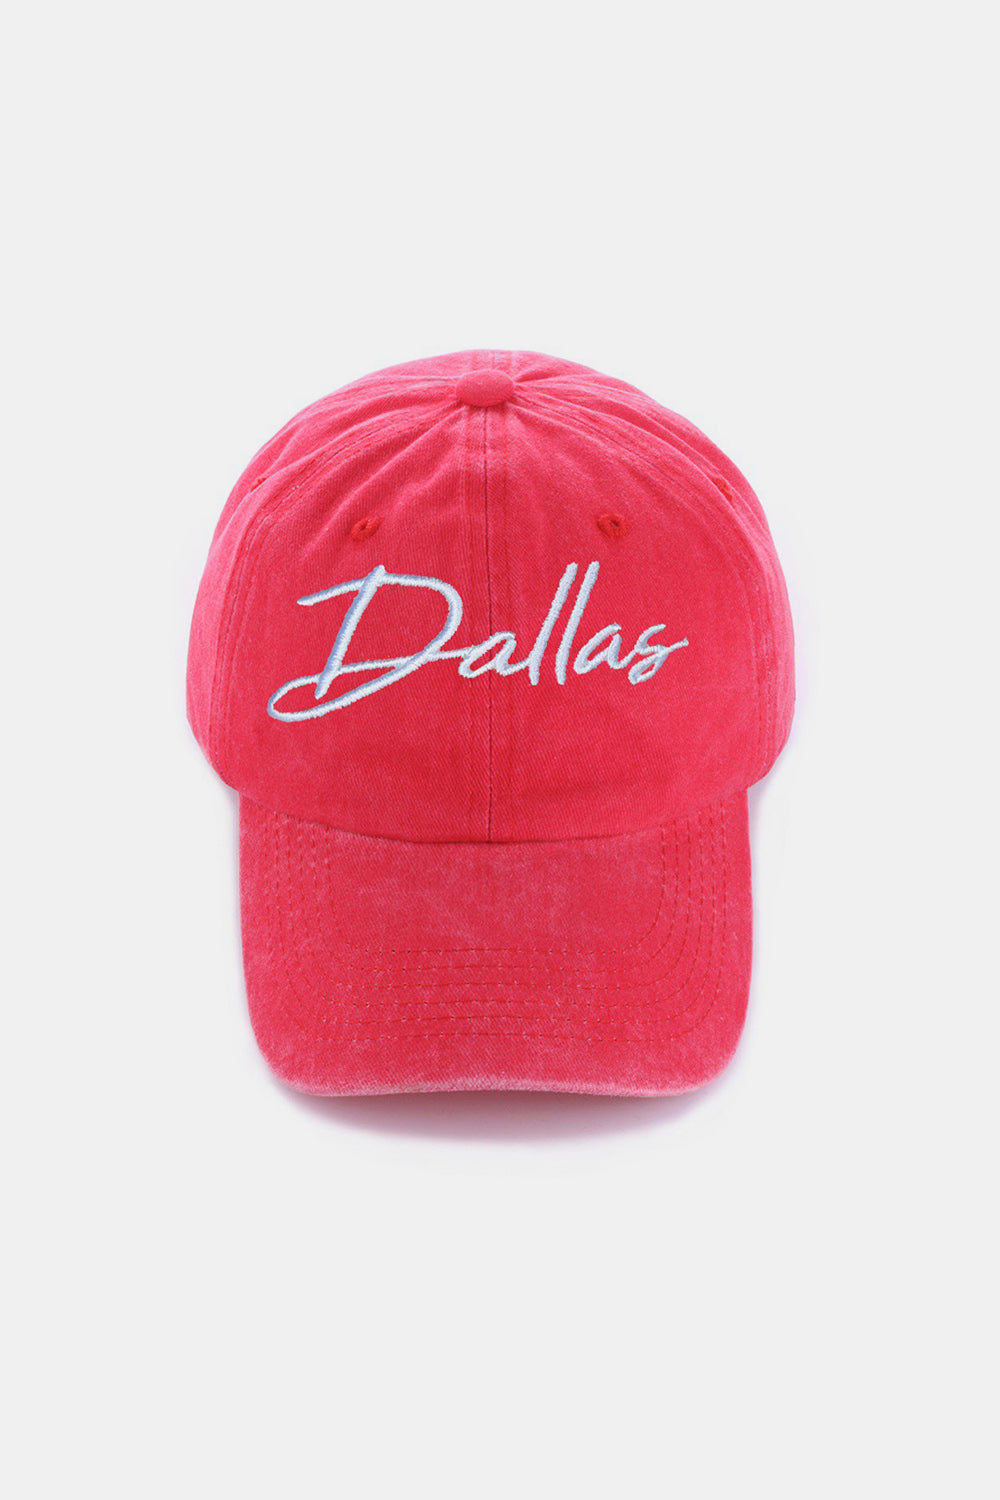 DALLAS Embroidered Baseball Cap